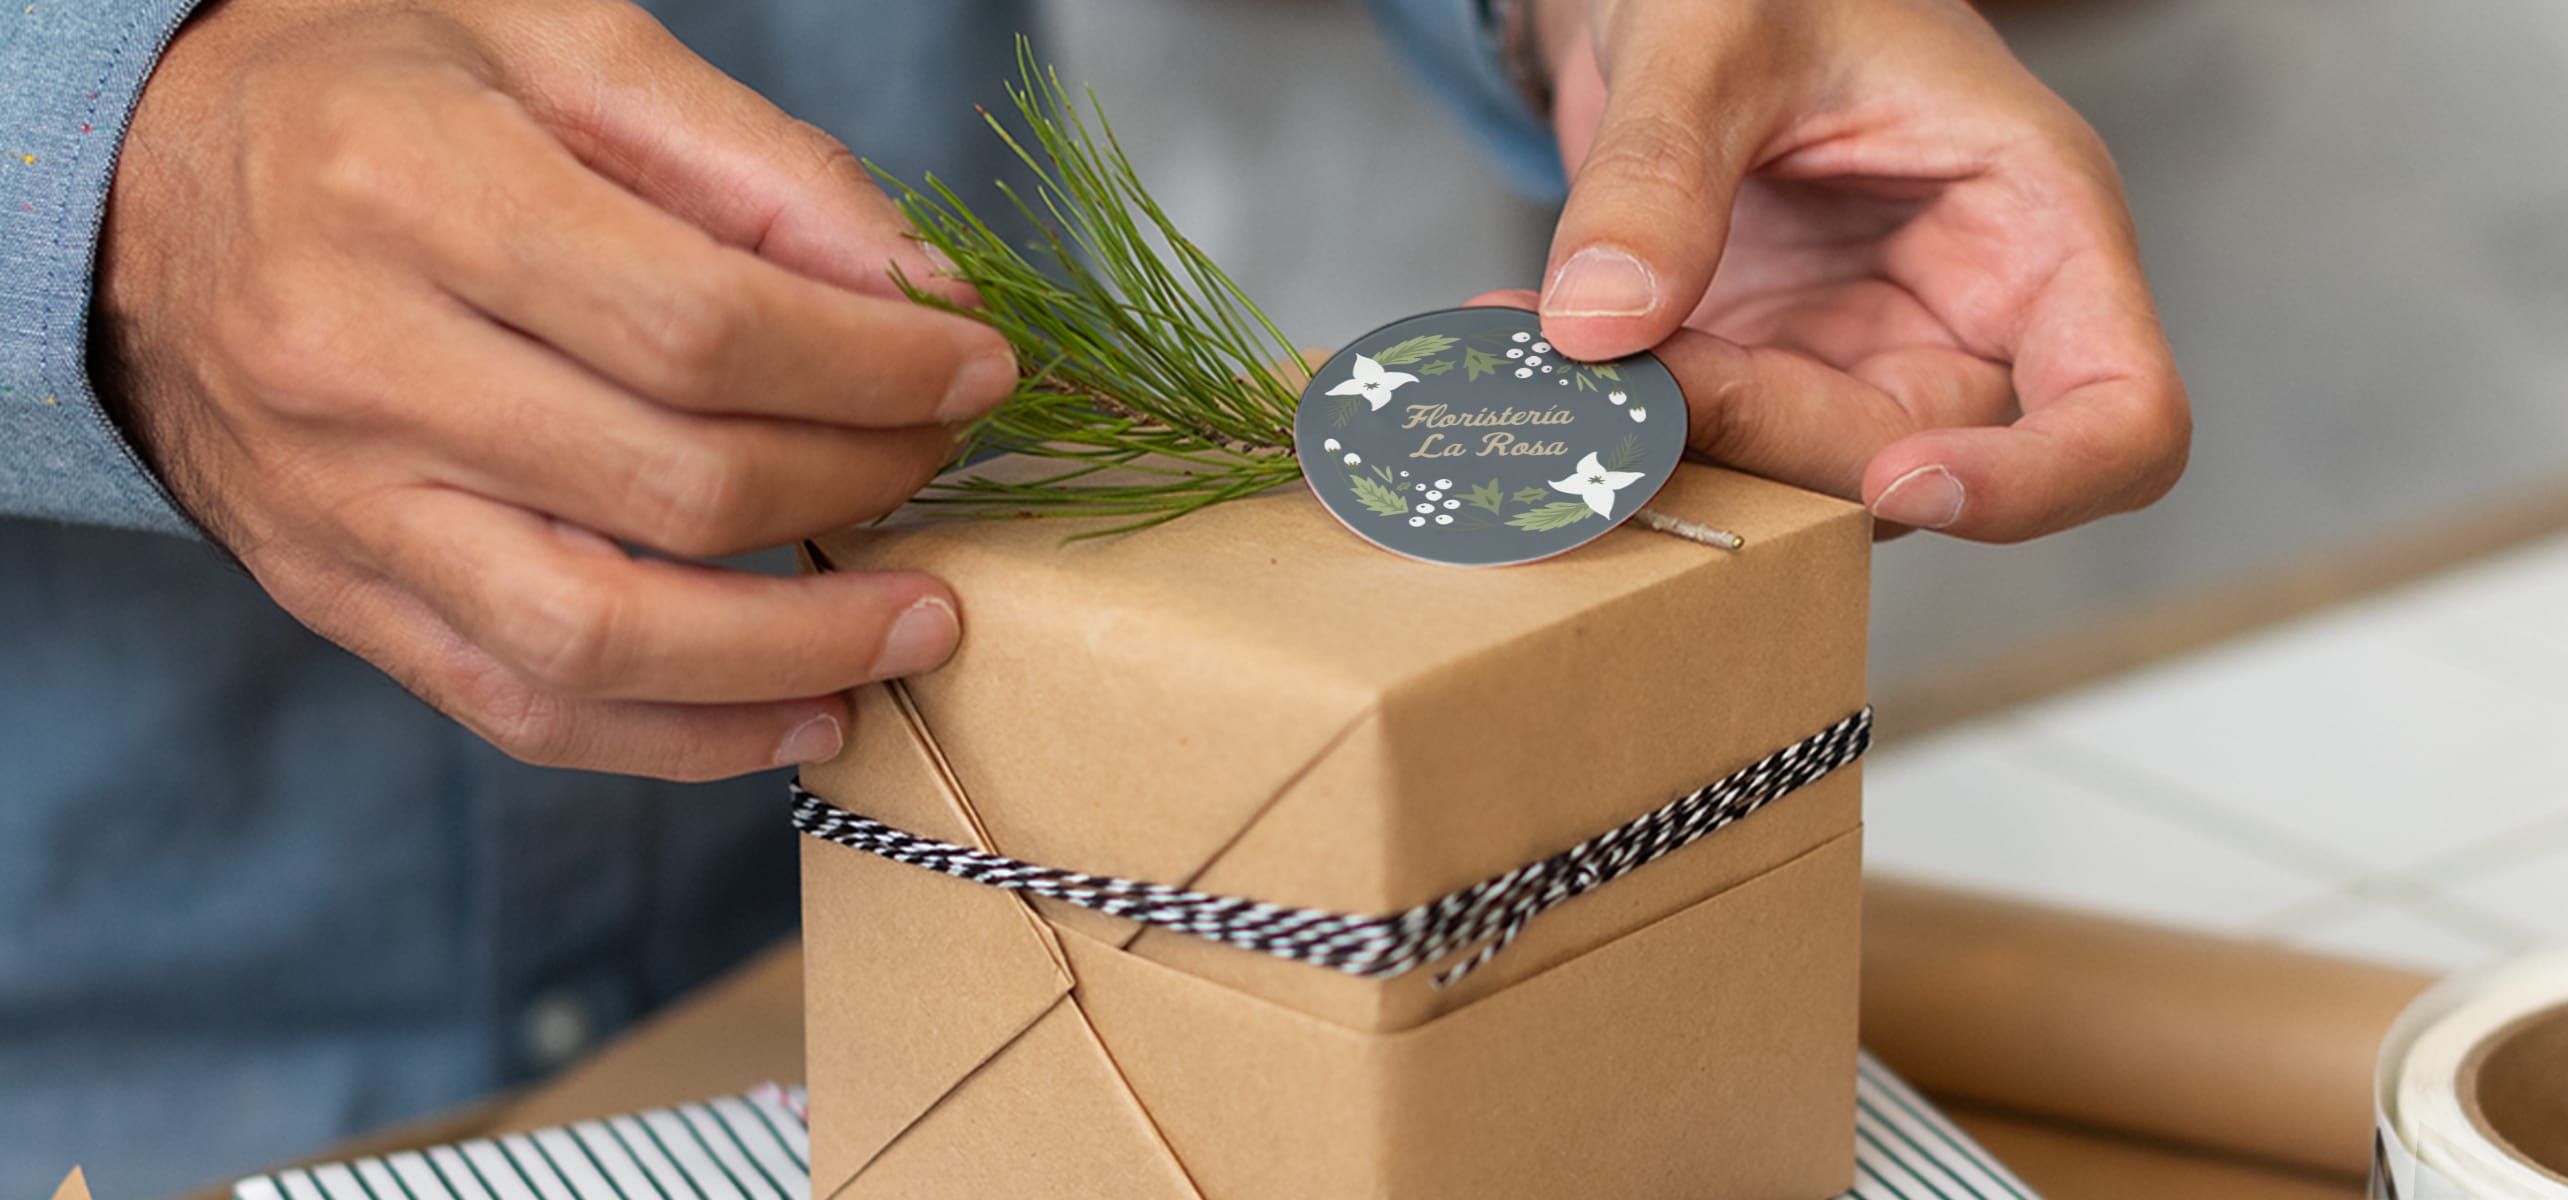 Paquete de 25 cajas de embalaje corrugado para envío, sobres de cartón para  pequeñas empresas, boutiques, regalos de correo, cajas de regalo para